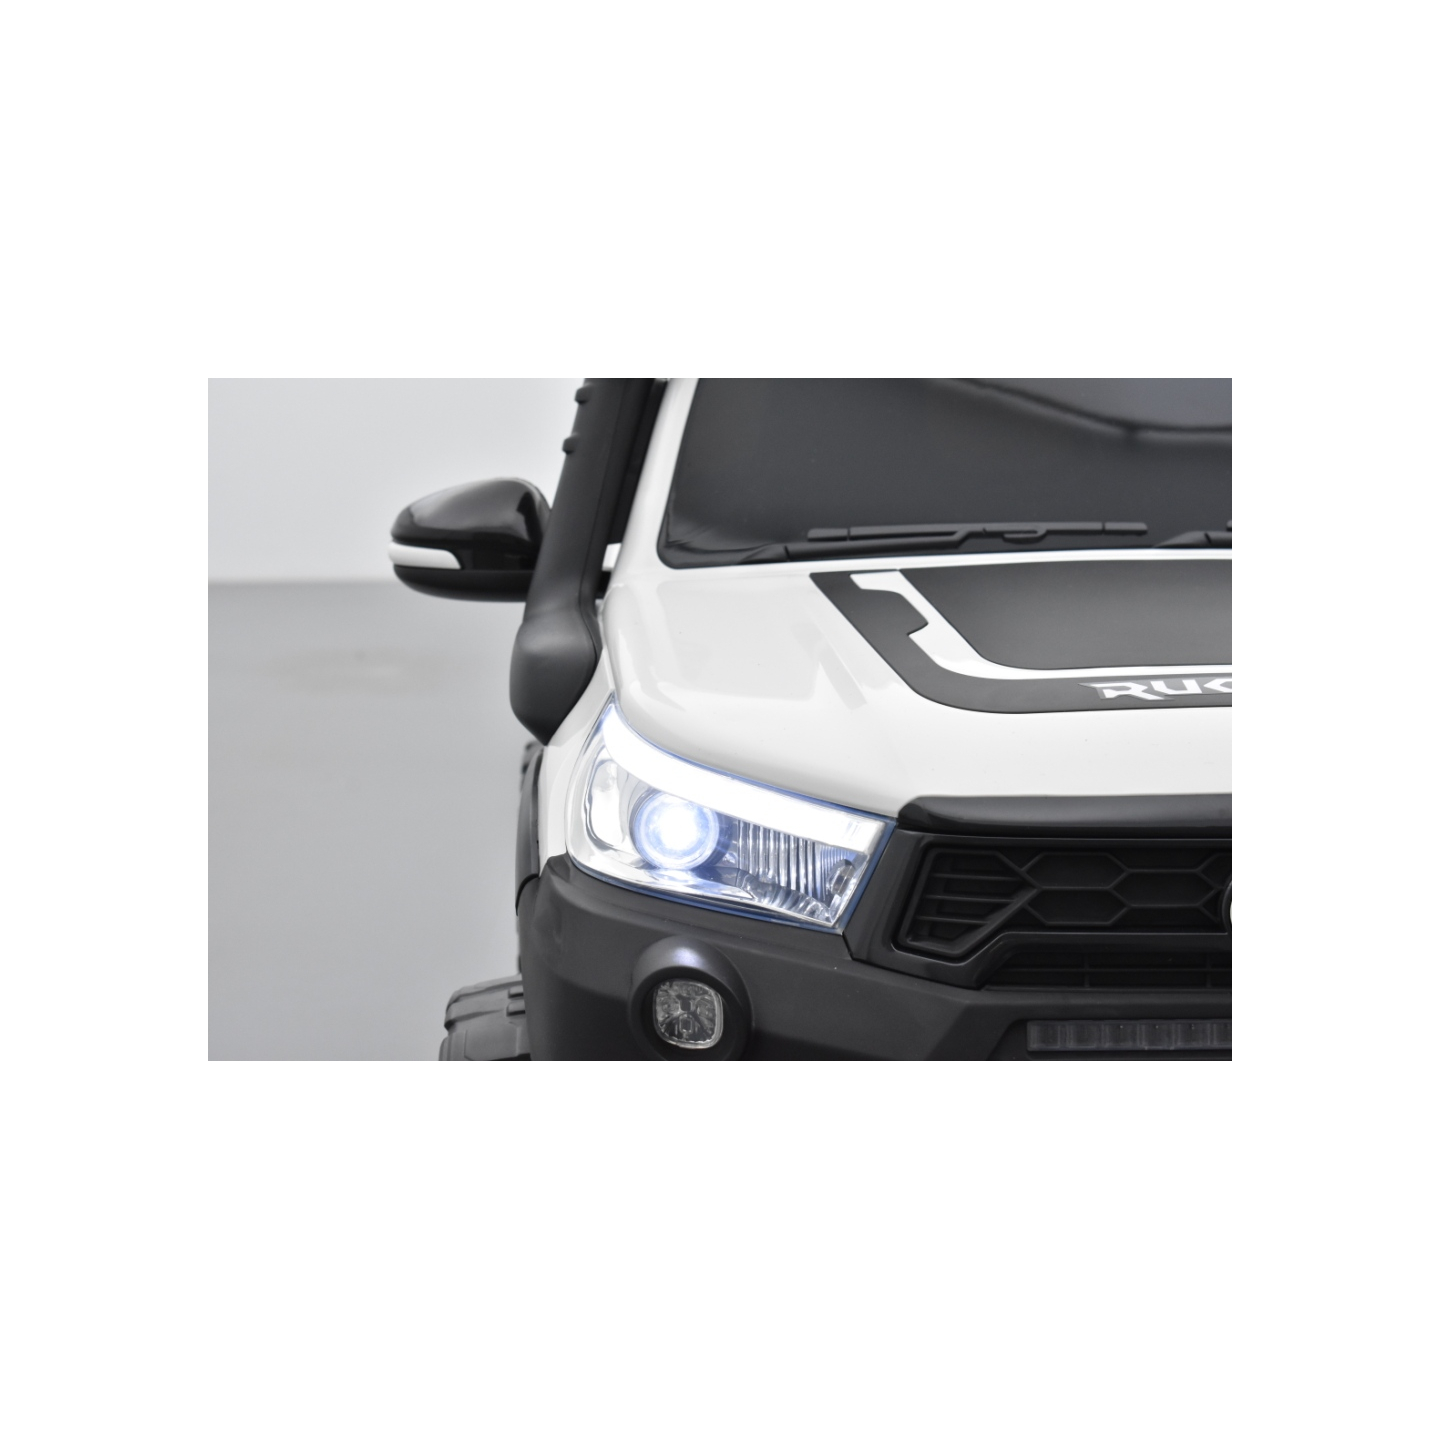 Toyota Hilux blanc 24 Volts électrique pour enfant écran mp4, 4x4 électrique enfant 2 places